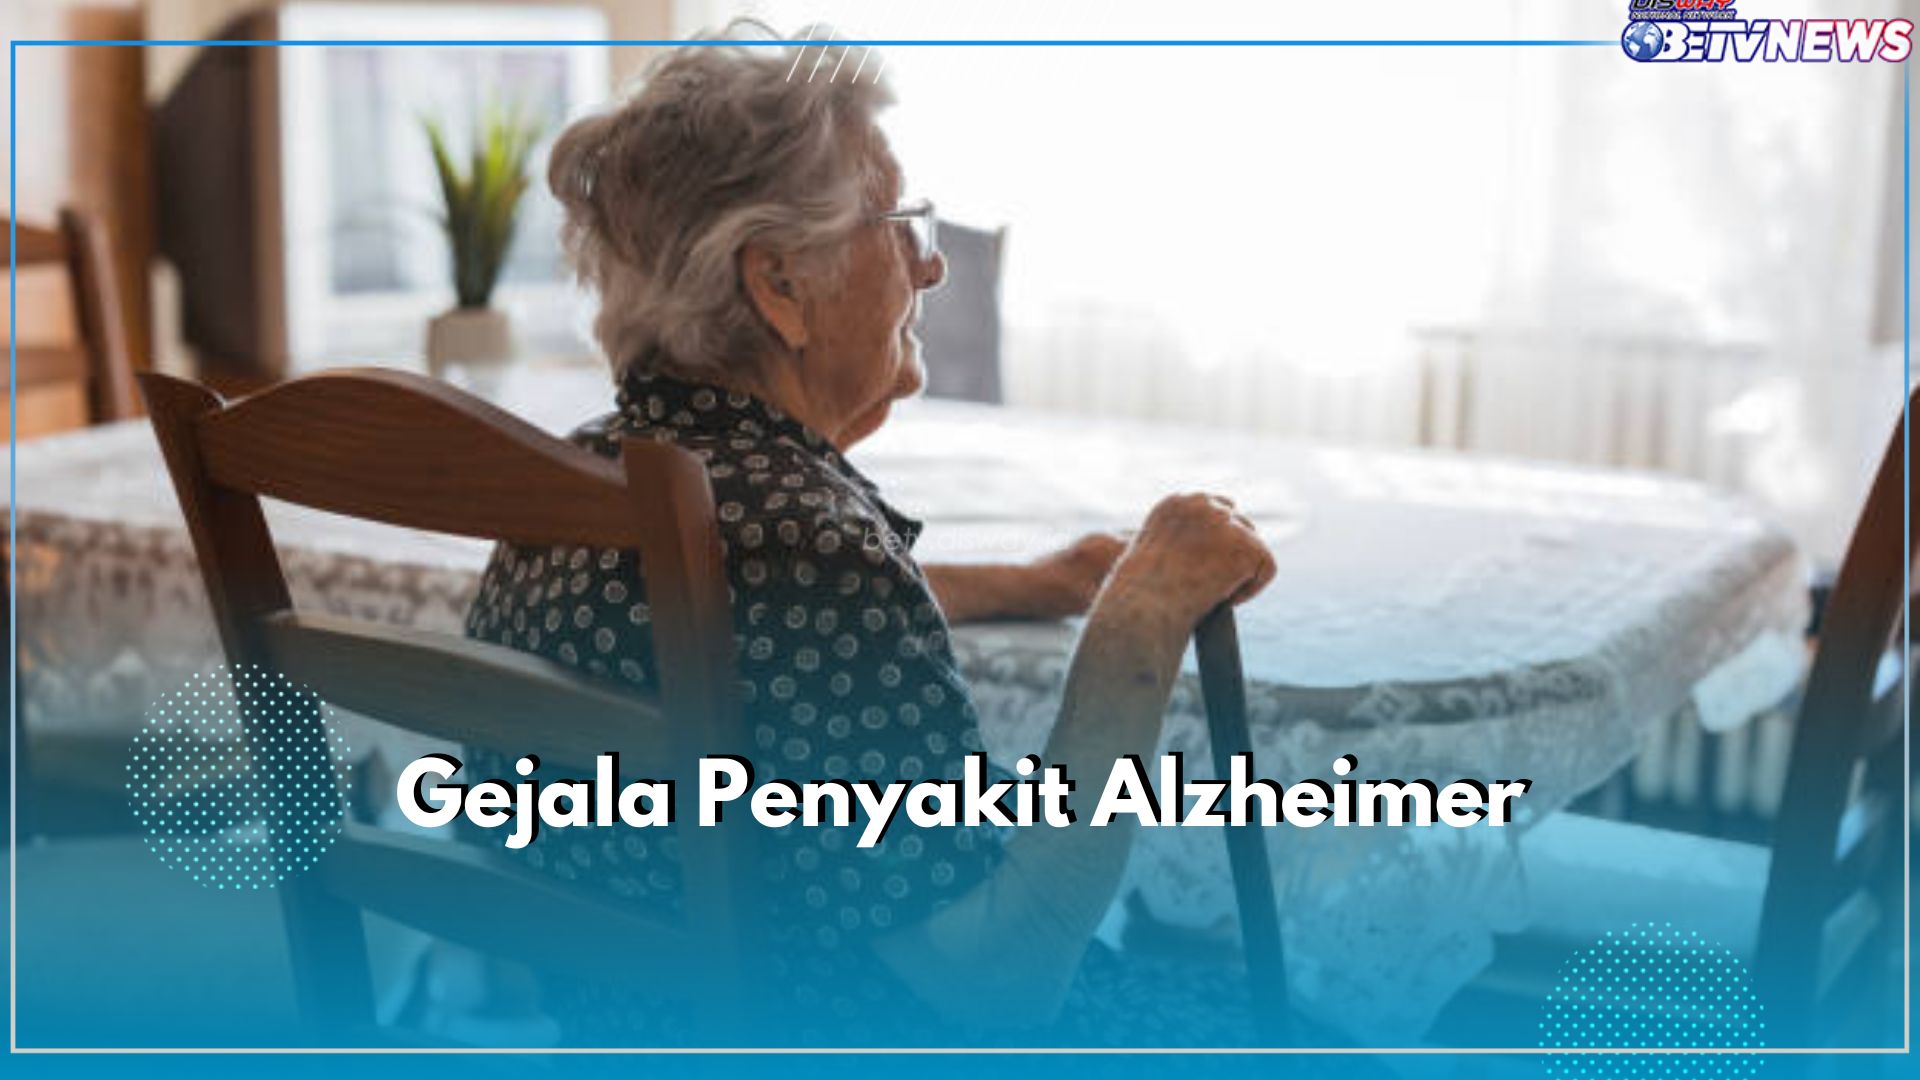  Identifikasi Penyakit Alzheimer Melalui 5 Gejala Ini, Ada Gejala Ringan hingga Berat